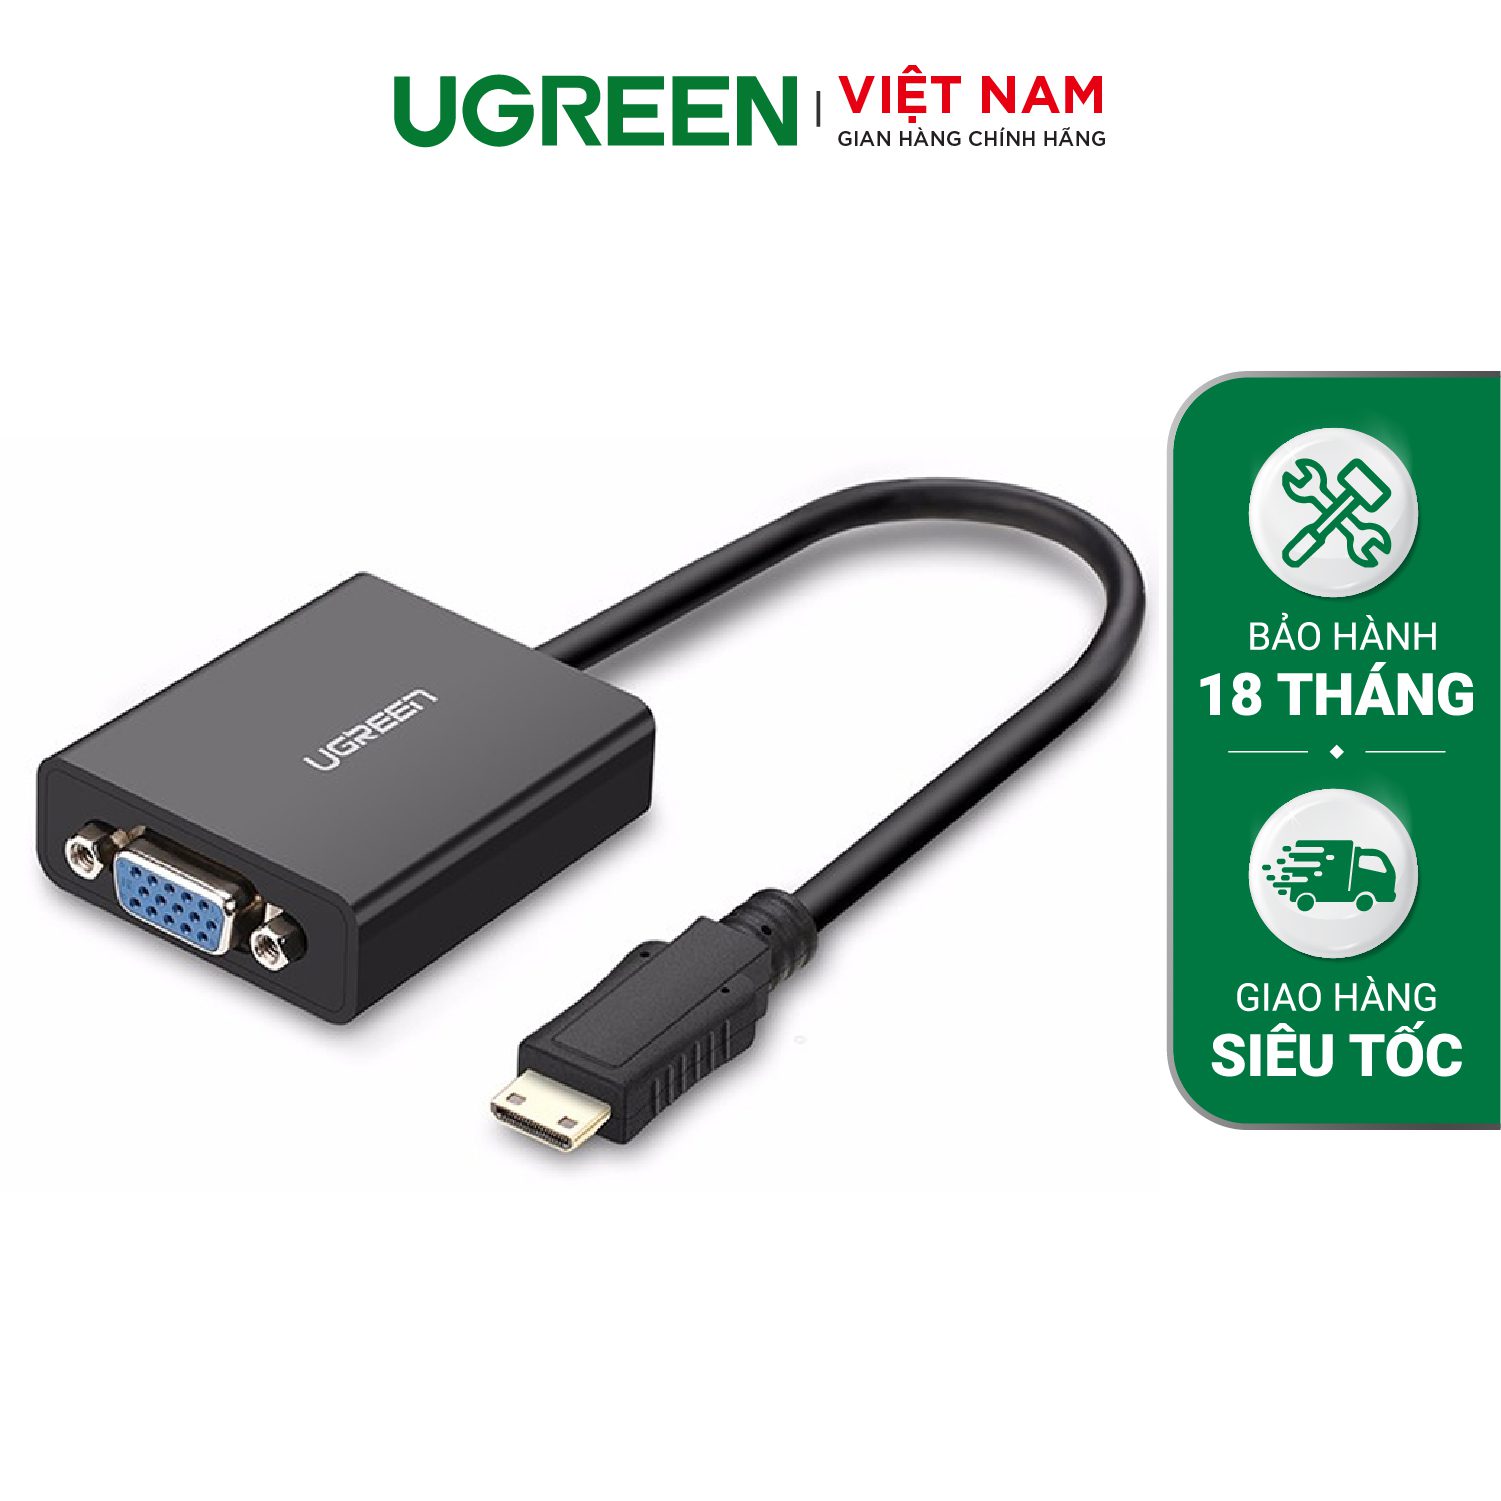 Cáp chuyển Mini HDMI sang VGA + Audio 3.5mm UGREEN MM112 - Hỗ trợ phân giải 1920*1080@60Hz - Bảo hành 18 tháng – Ugreen Việt Nam